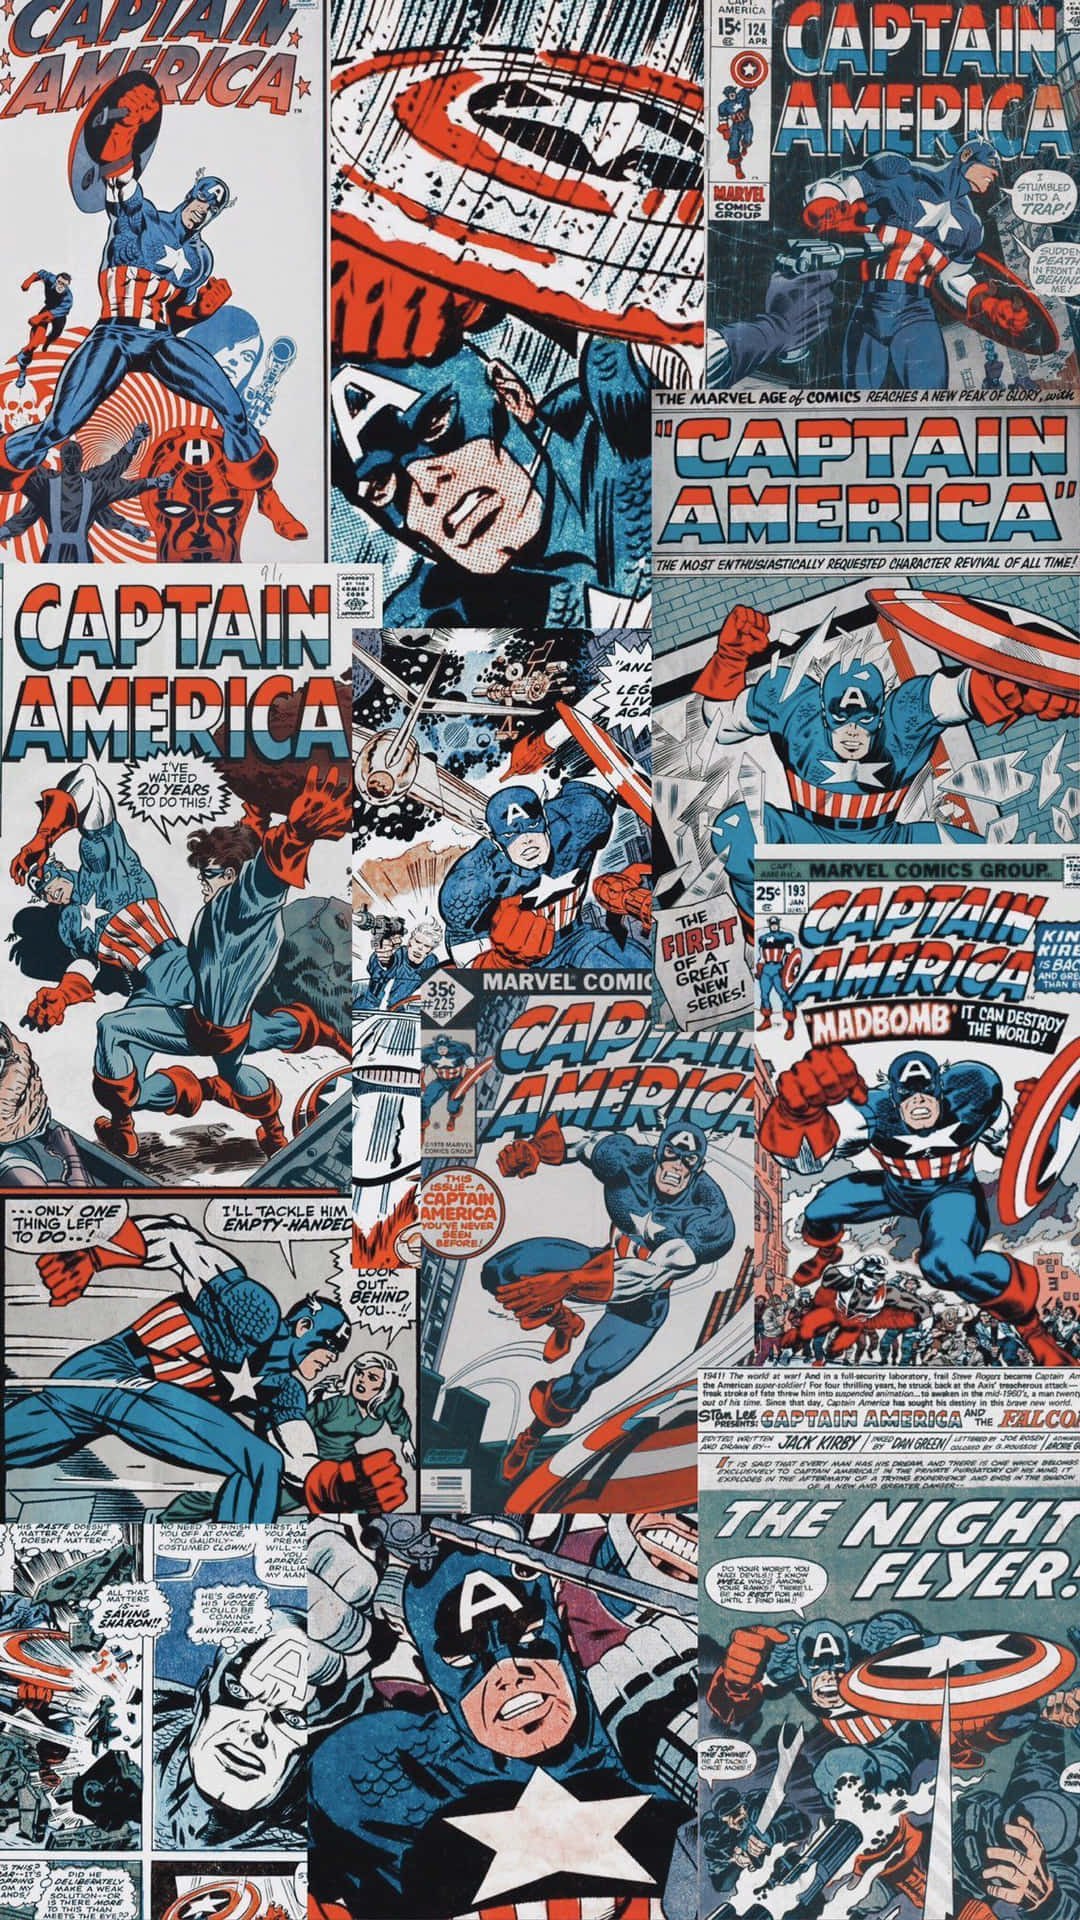 Marvelsklassiska Seriehjälte, Retro Captain America. Wallpaper